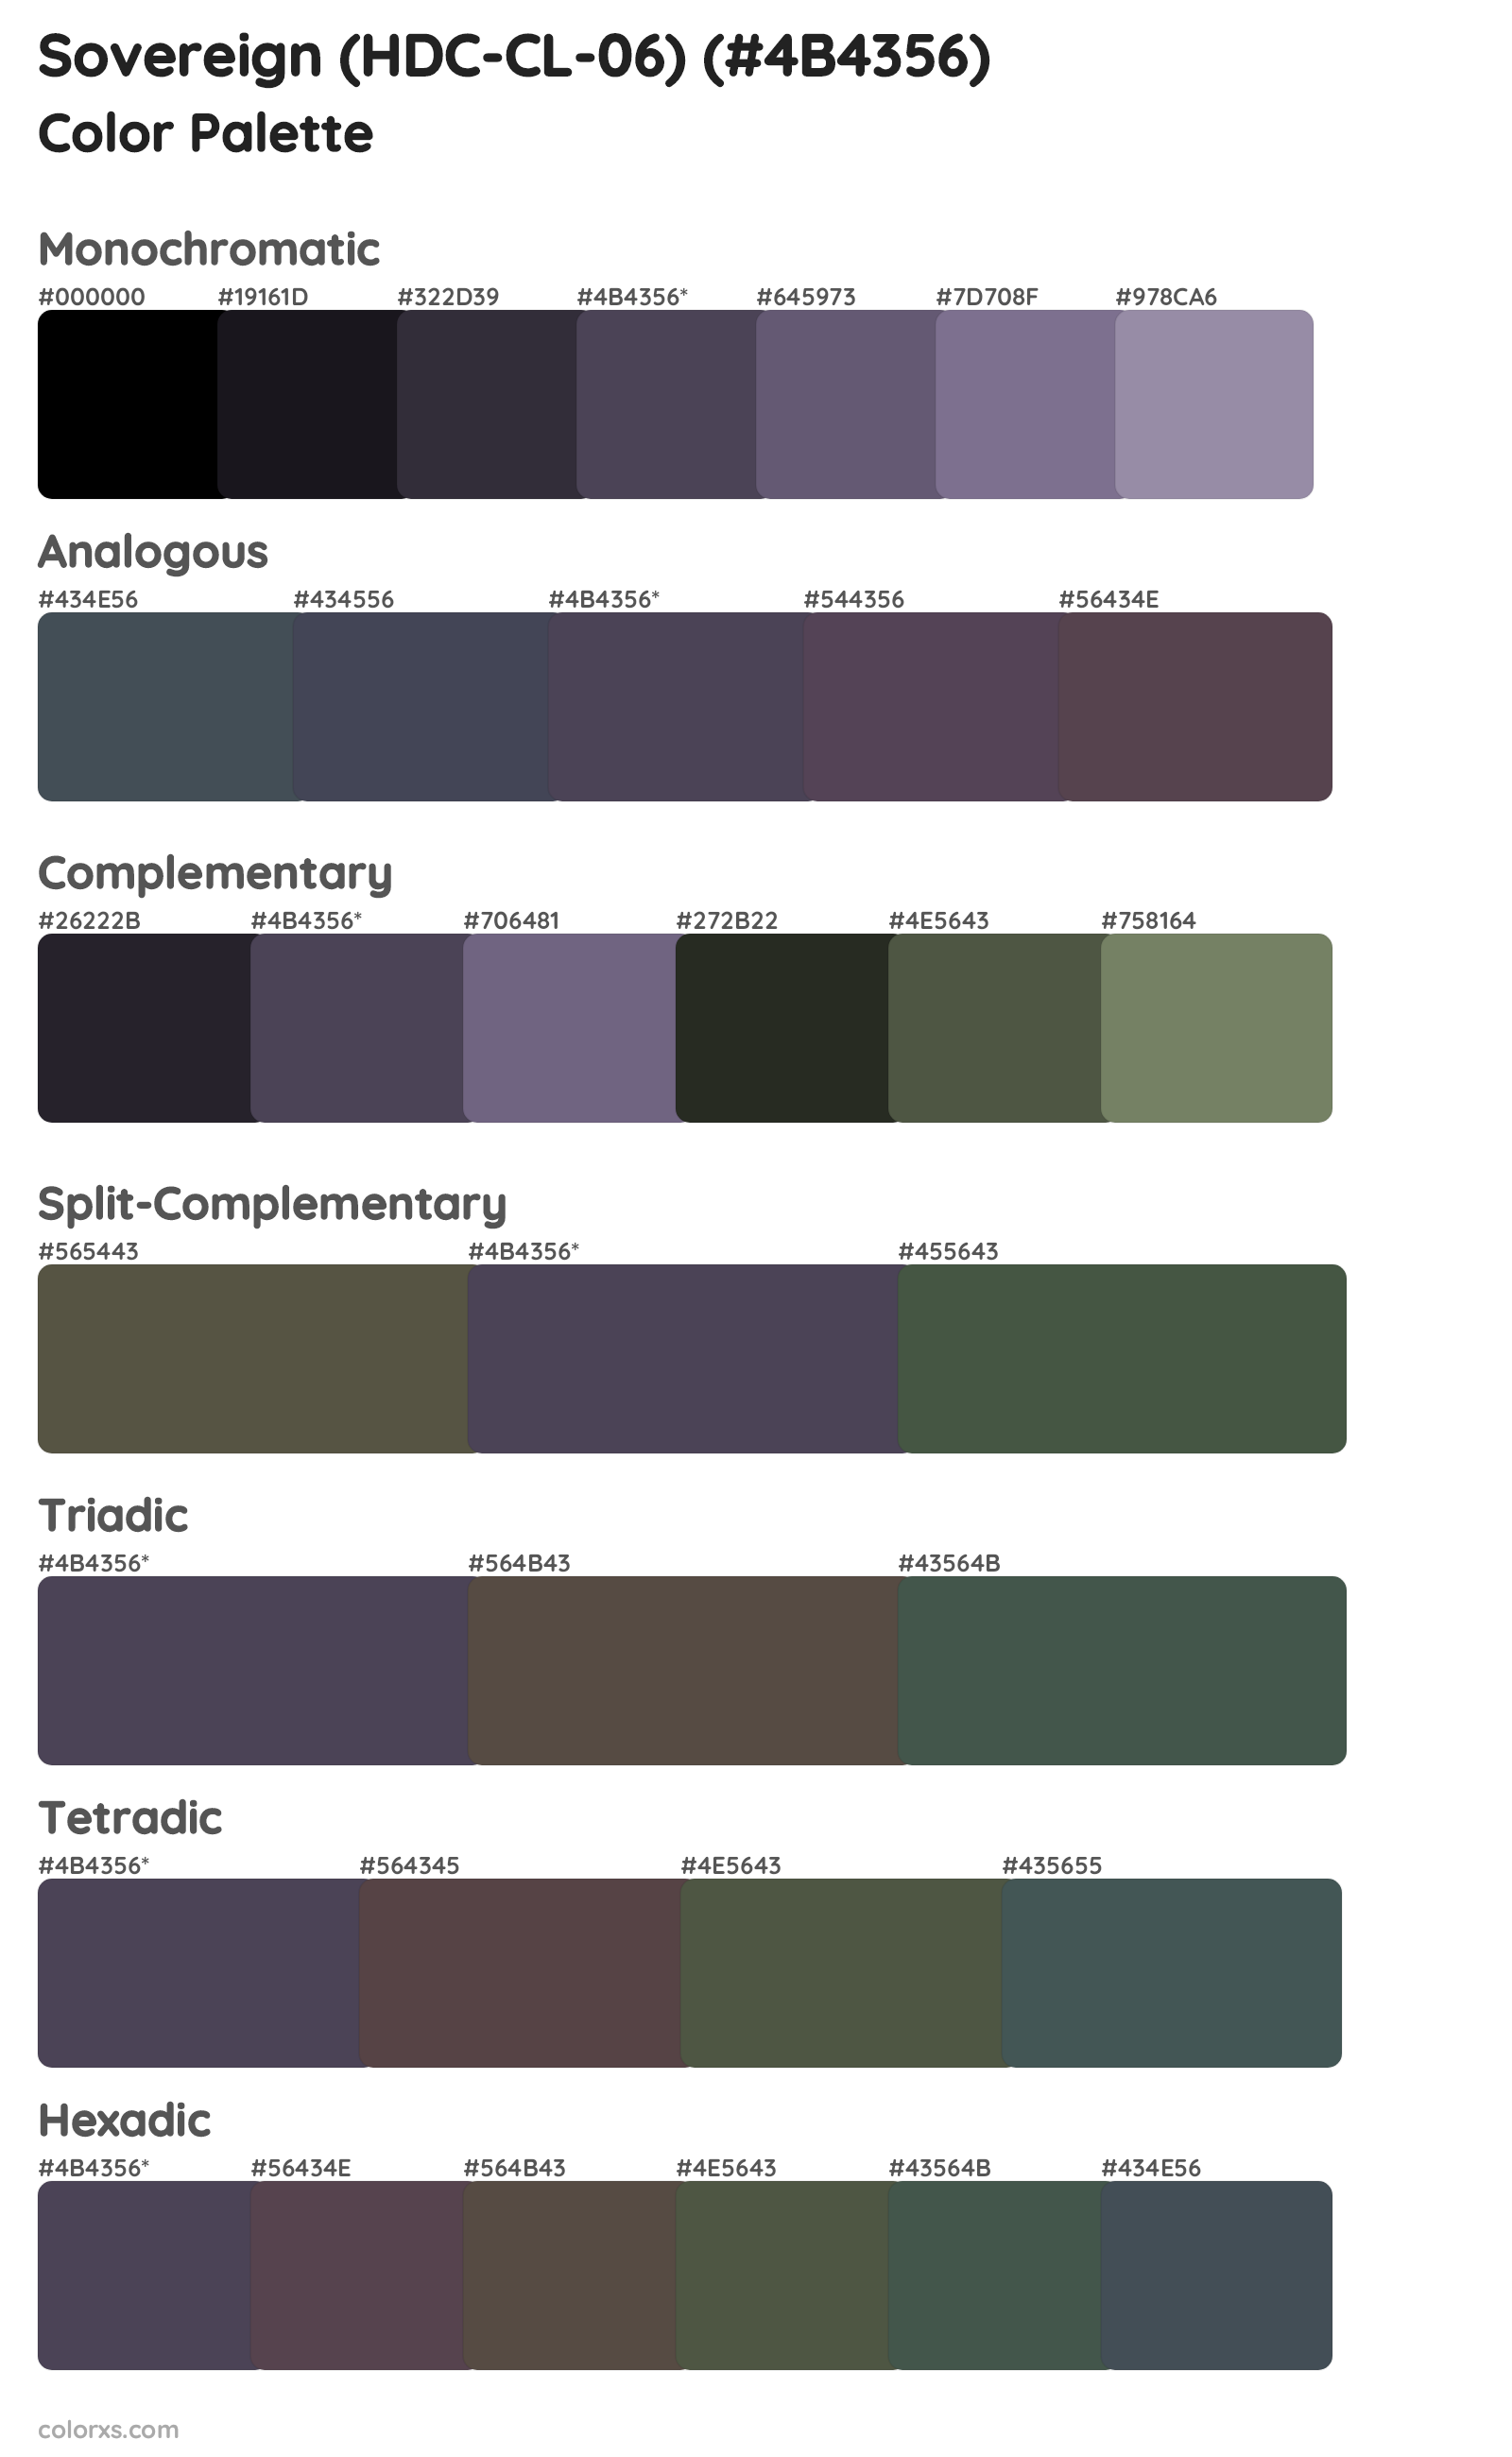 Sovereign (HDC-CL-06) Color Scheme Palettes